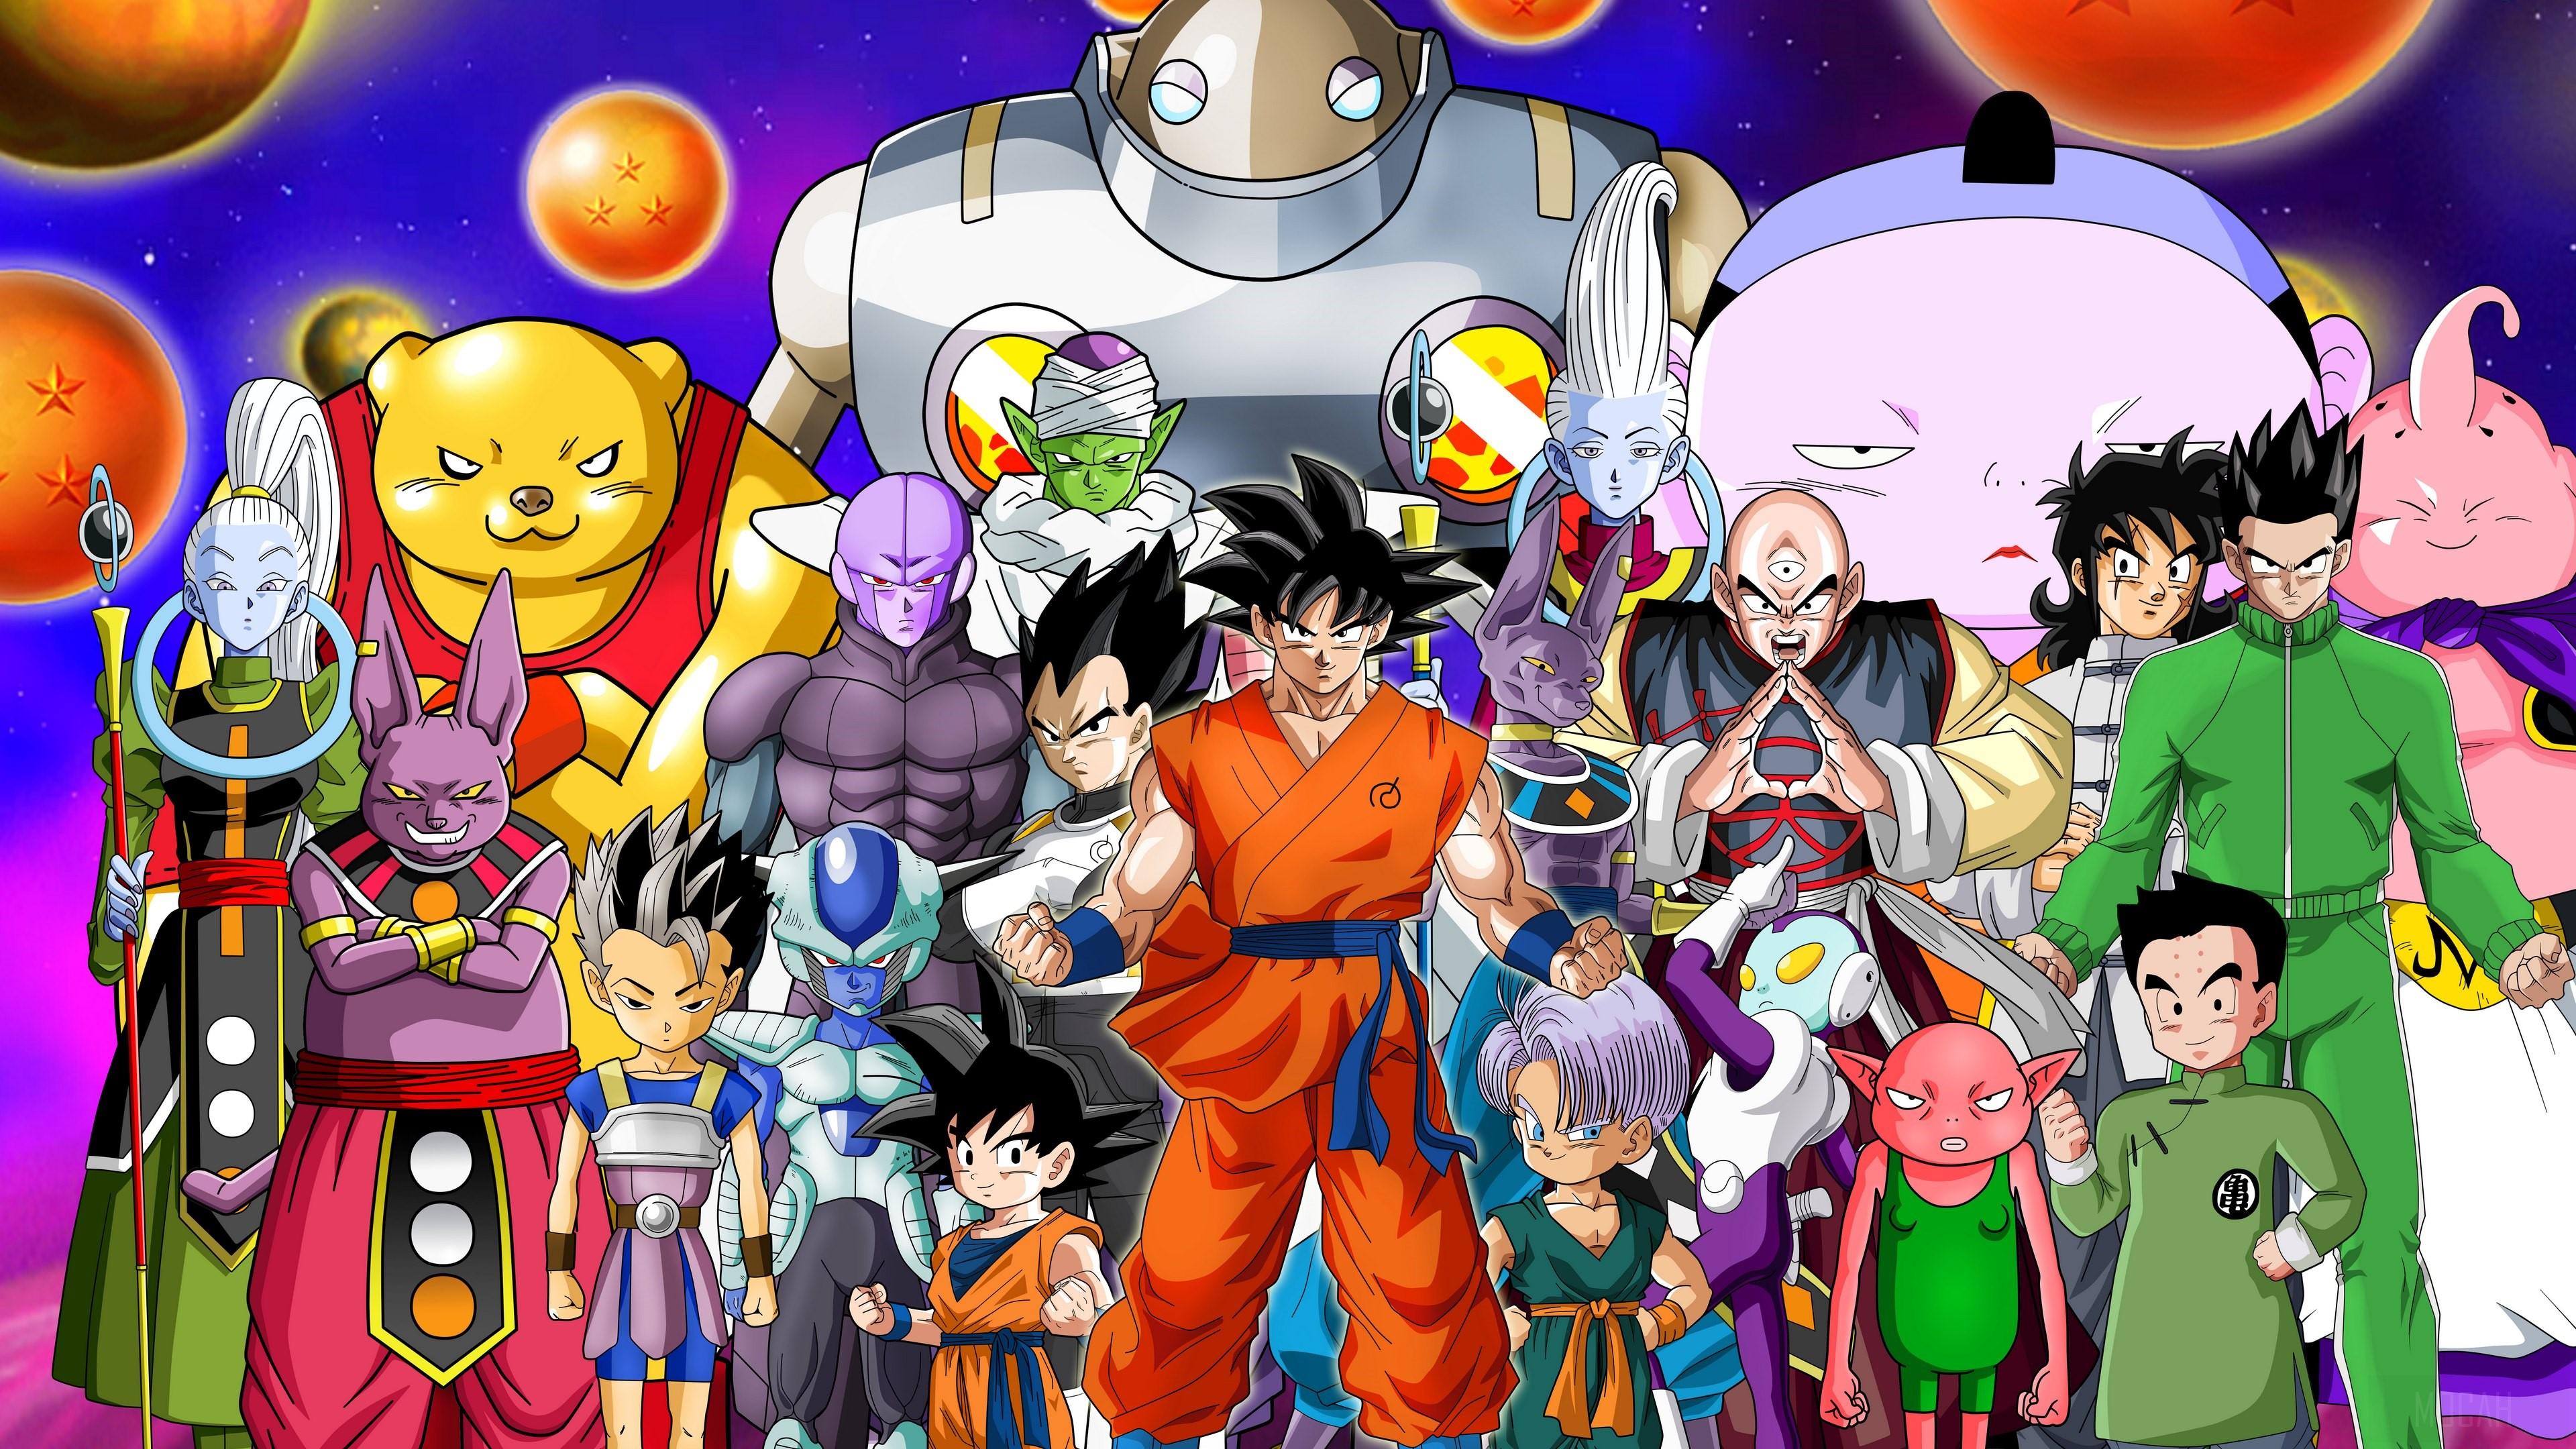 HD Goku and Yamcha Wallpapers - Top Free HD Goku and Yamcha Backgrounds ...